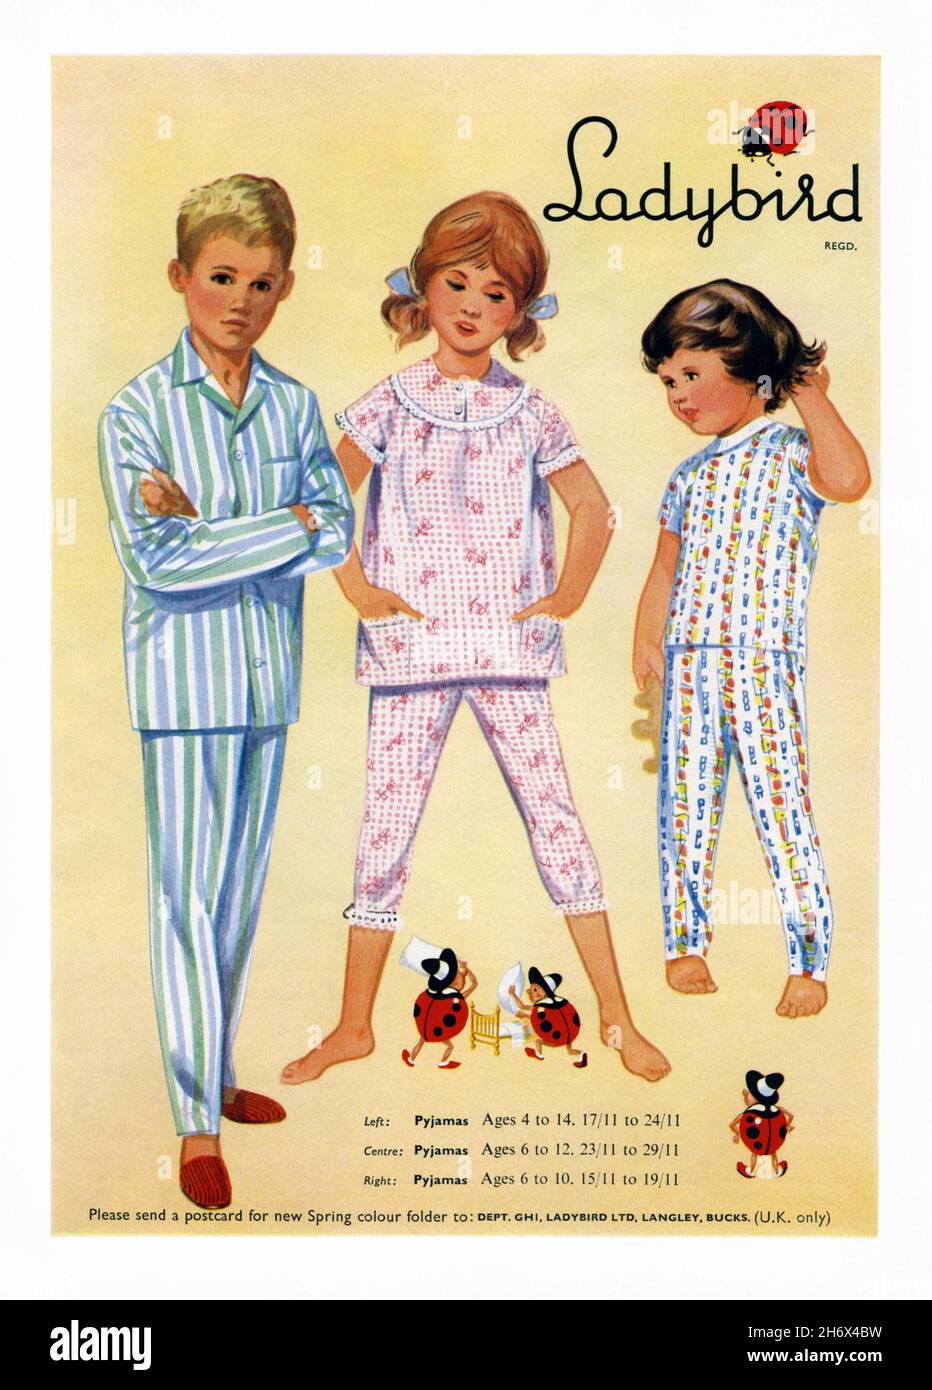 Une publicité des années 1960 pour les vêtements de nuit Ladybird pour enfants.La publicité est apparue dans un magazine publié au Royaume-Uni en mars 1965.L'illustration montre les vêtements de nuit pour garçons et filles.Ladybird est l'une des marques de vêtements pour enfants les plus connues au Royaume-Uni et a une longue histoire qui remonte au XVIIIe siècle, avec le nom de vêtements Ladybird apparaissant pour la première fois en 1938, faisant des vêtements et des chaussures pour les enfants âgés jusqu'aux premières années de l'adolescence,Et est aujourd'hui la propriété du groupe Very, le plus grand détaillant en ligne du Royaume-Uni, des graphismes vintage des années 1960 à usage éditorial. Banque D'Images